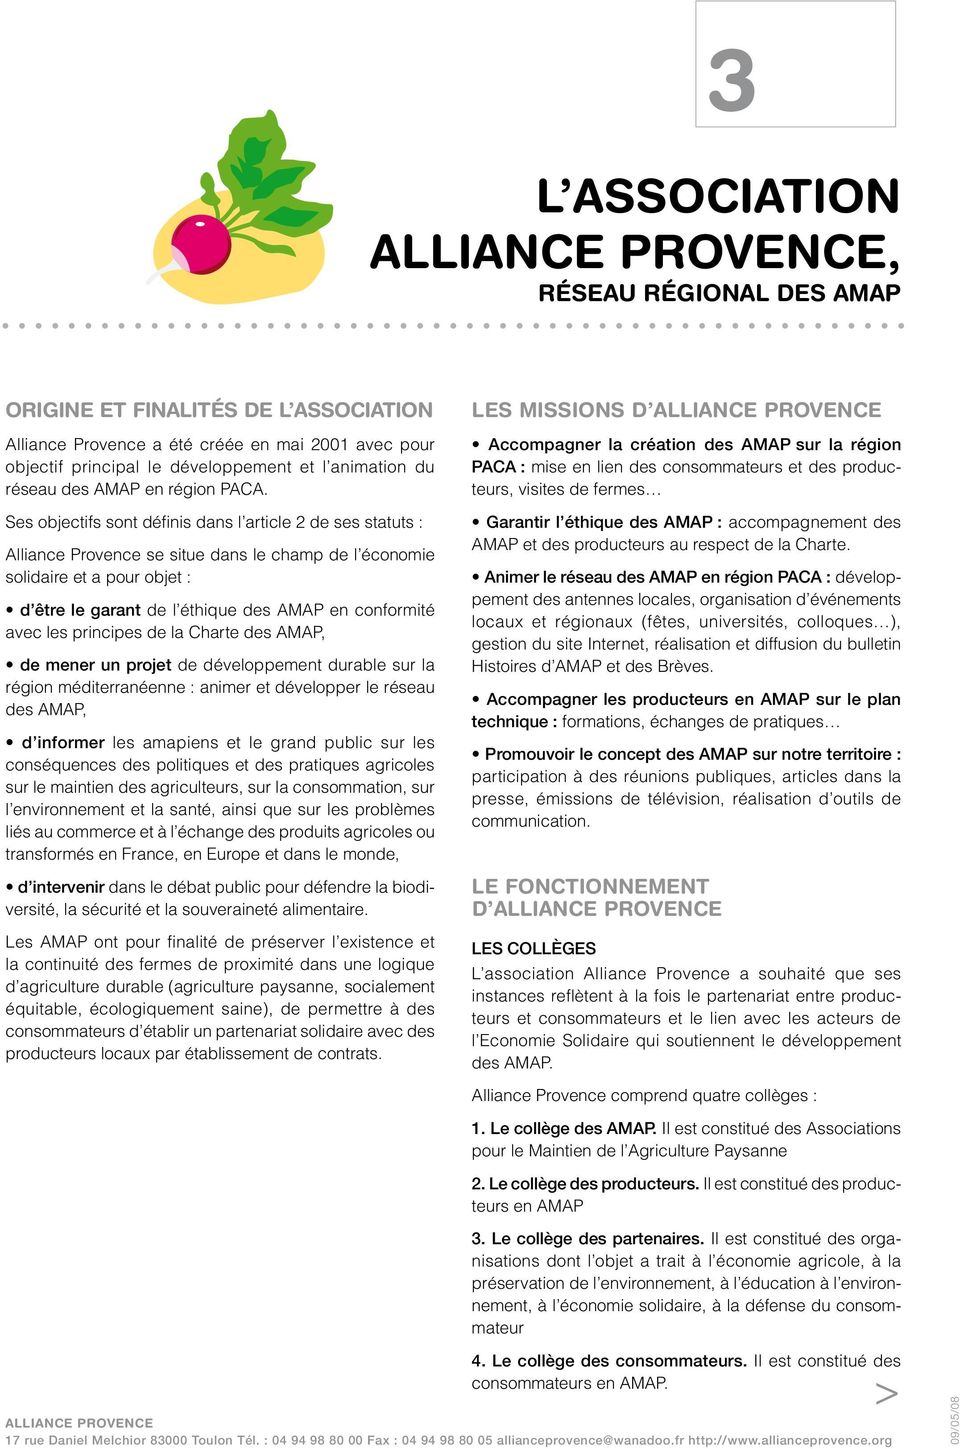 Ses objectifs sont définis dans l article 2 de ses statuts : Alliance Provence se situe dans le champ de l économie solidaire et a pour objet : d être le garant de l éthique des AMAP en conformité